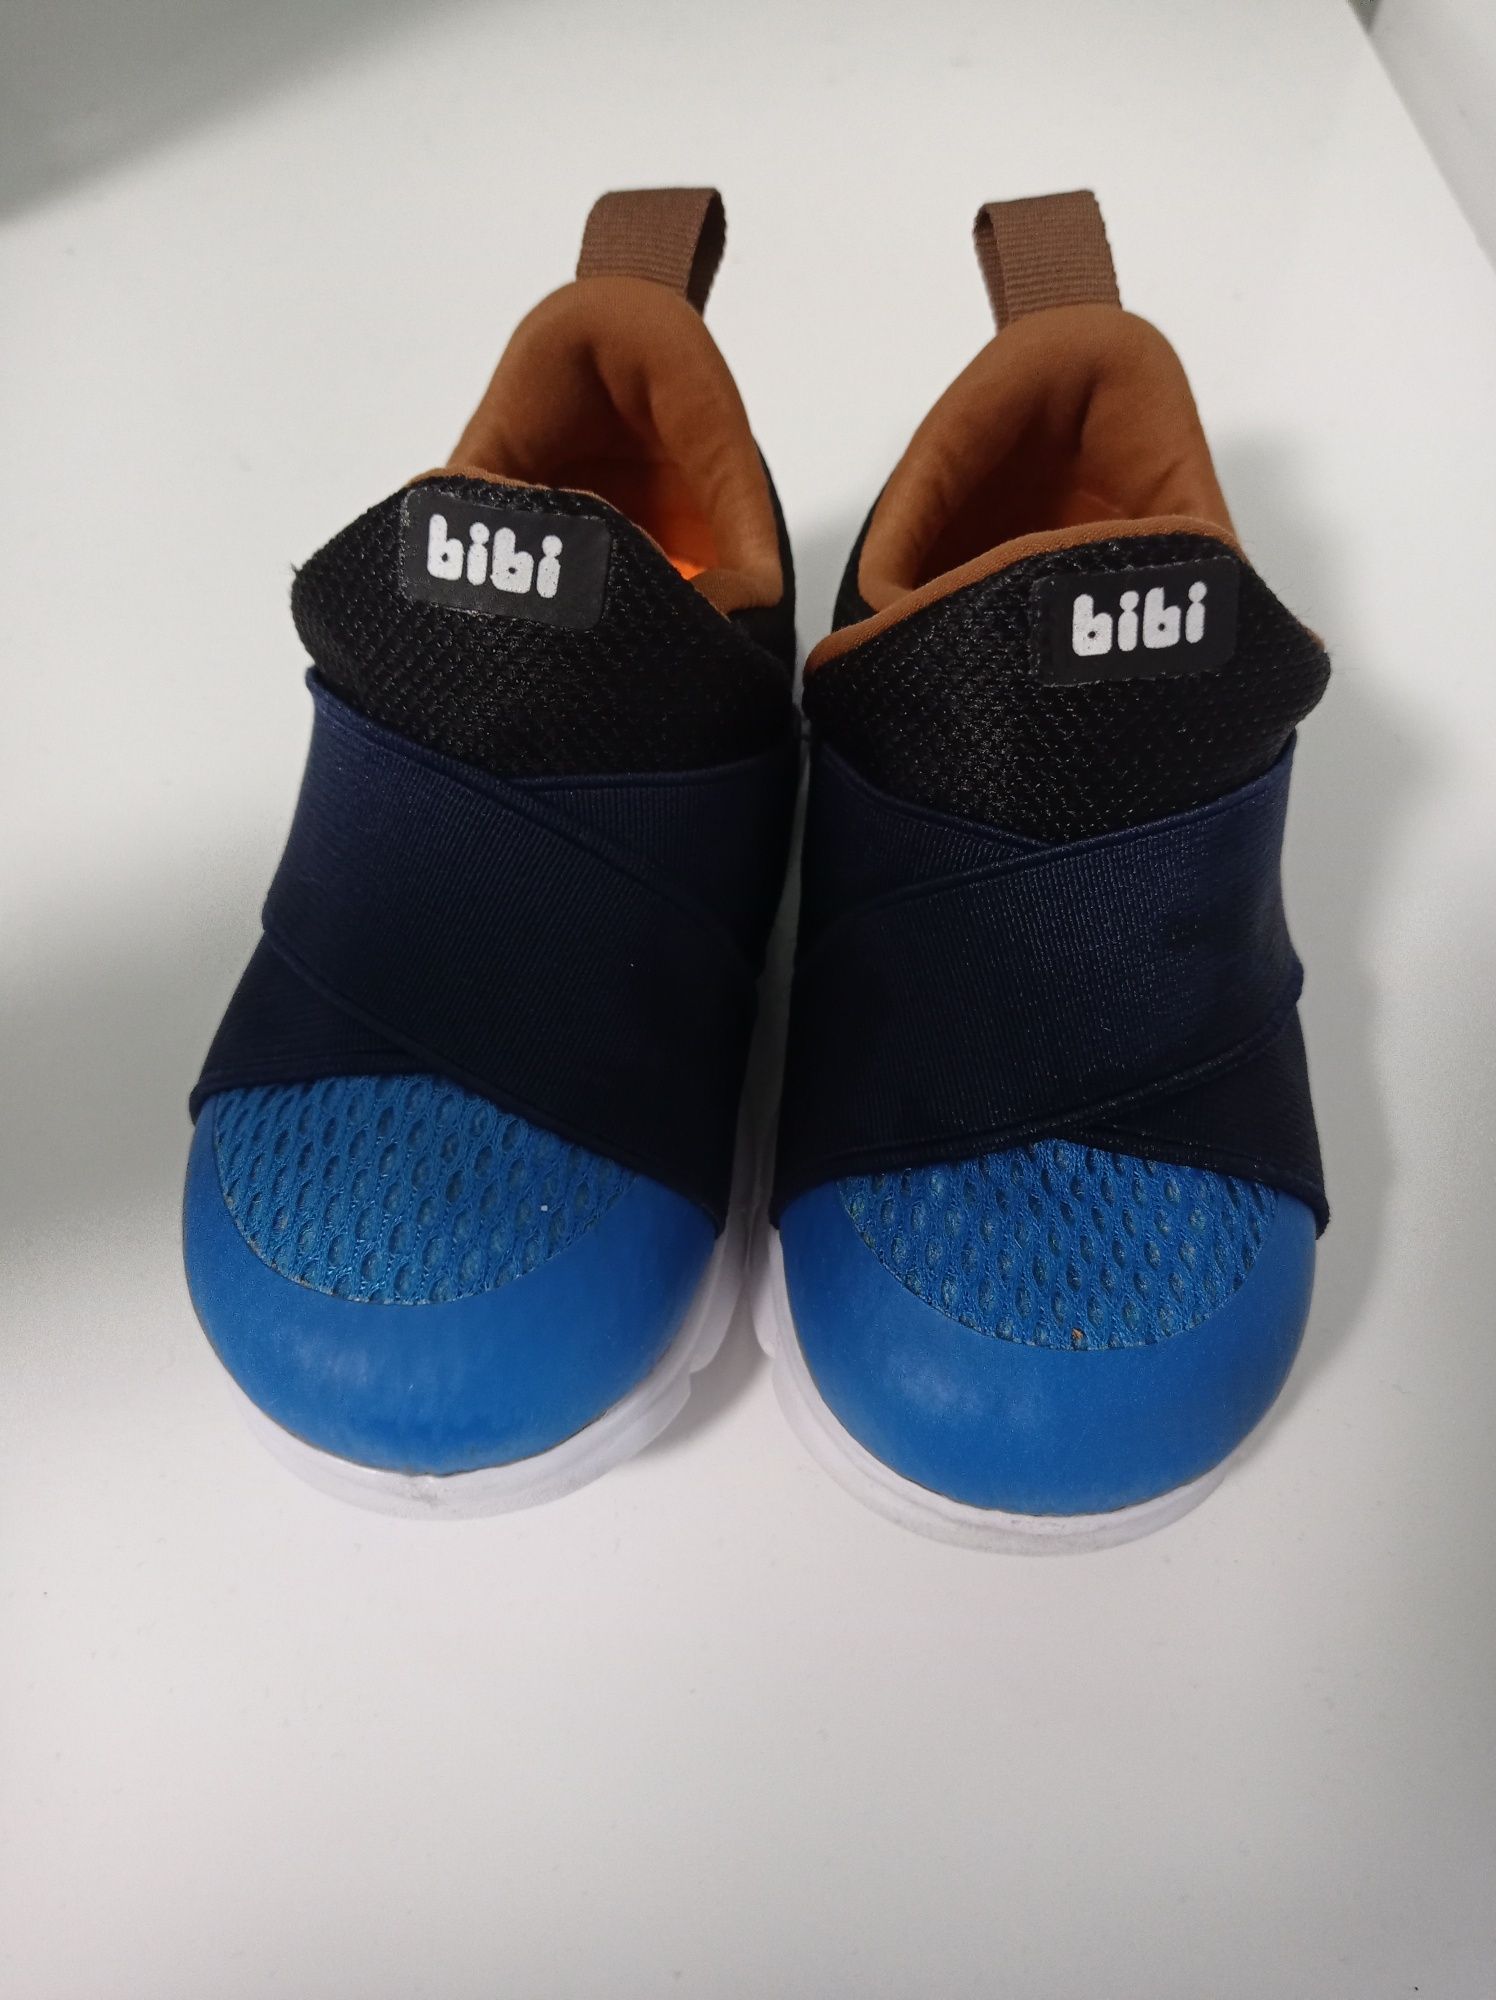 Trampki buty  firmy BIBI rozmiar 23